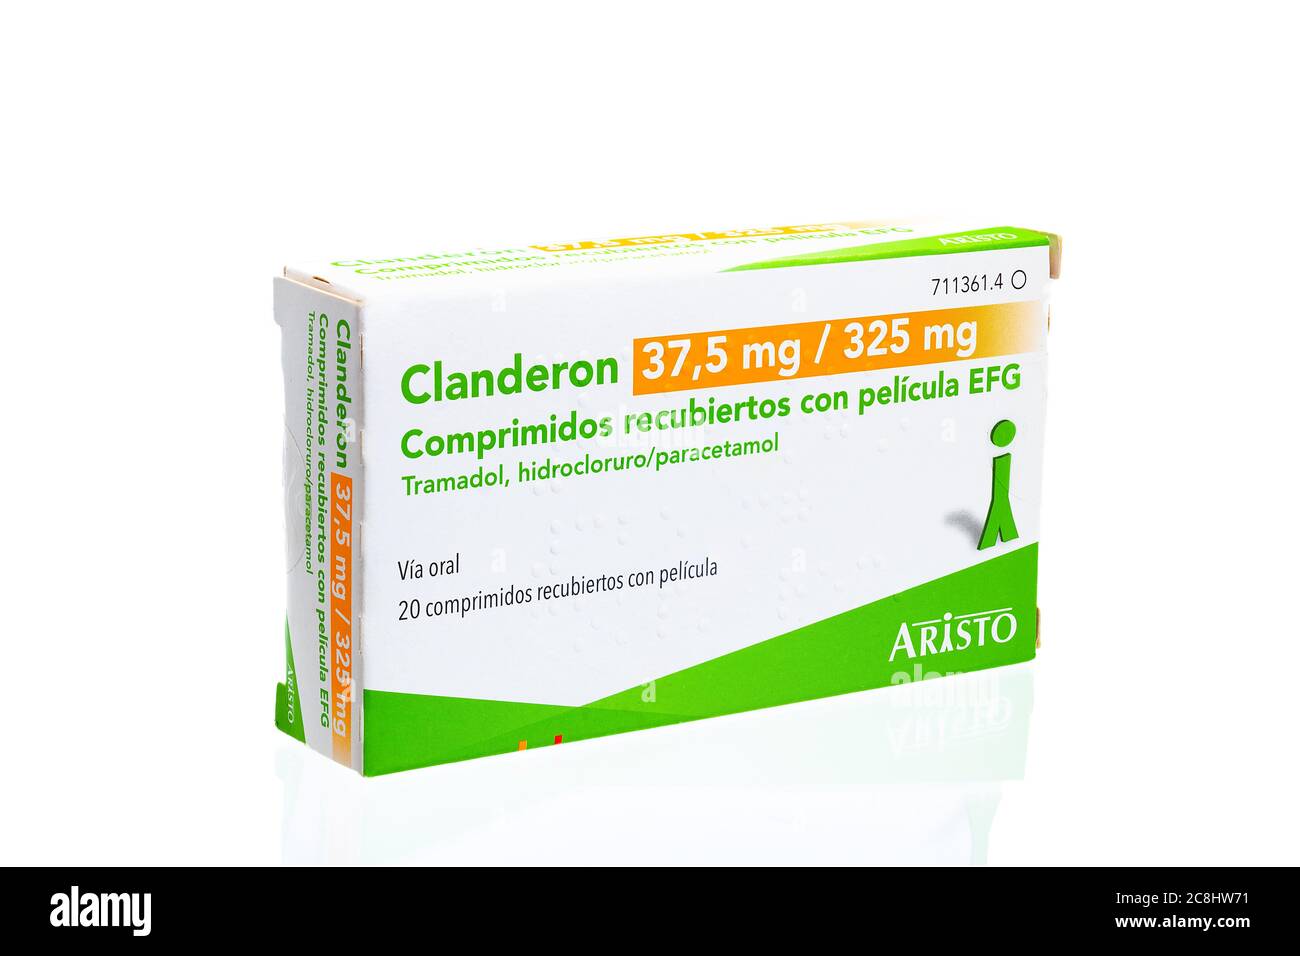 Huelva, Spagna - 23 luglio 2020: Scatola spagnola di Tramadol cloridrato e Paracetamol marchio Clanderon. Questo farmaco è indicato per i sintomi Foto Stock